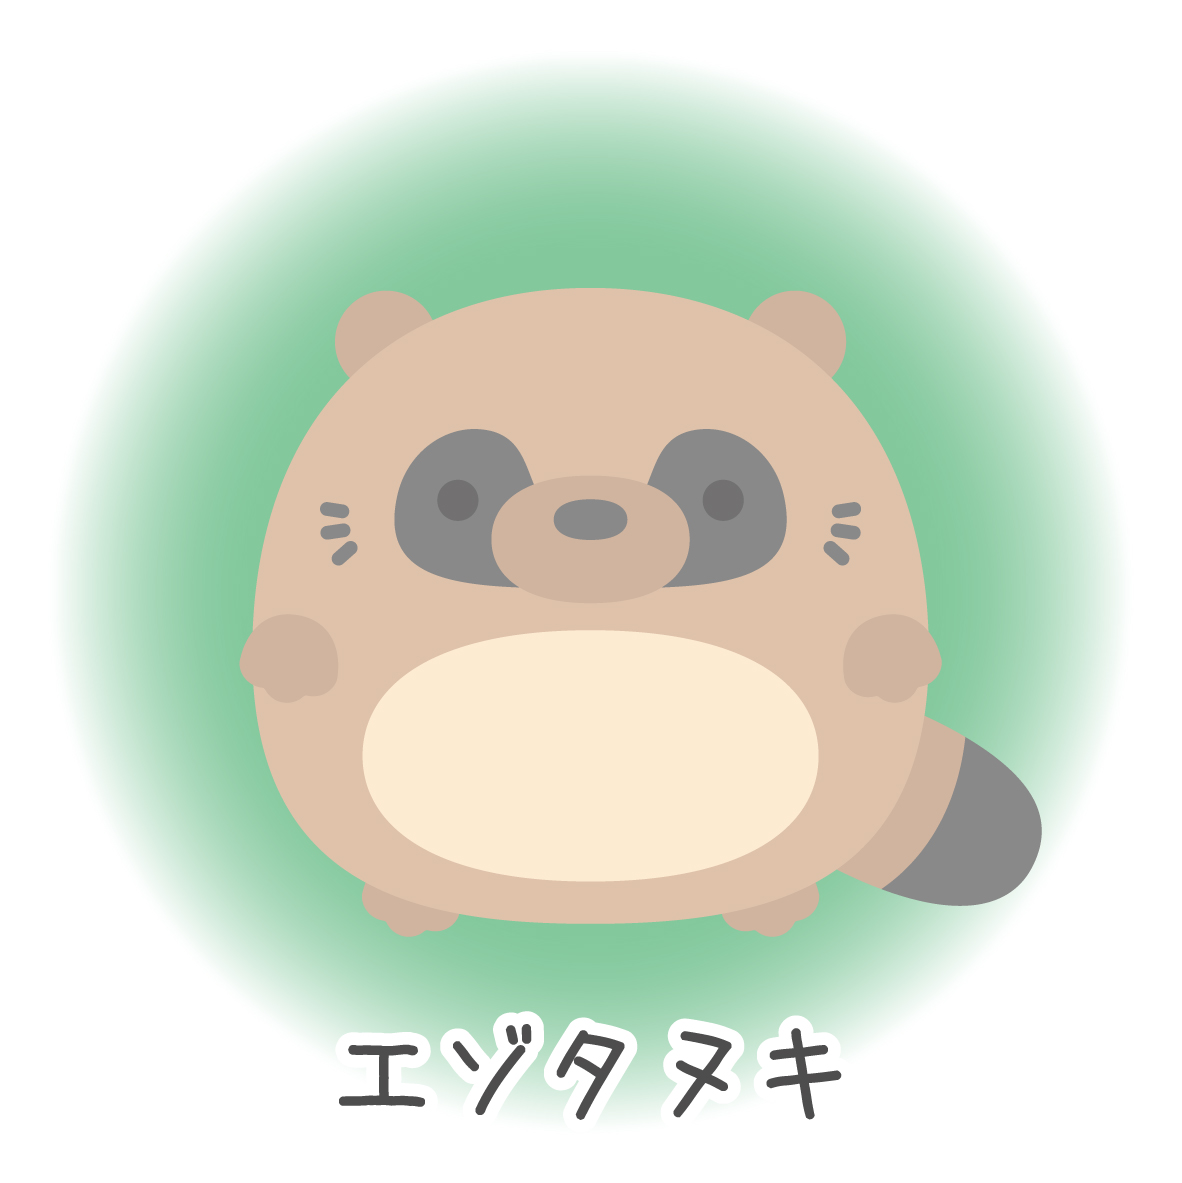 21 Ezo Friends エゾタヌキです Lineスタンプ発売中です どうぞよろしくお願い致します Lineスタンプ 北海道 蝦夷 エゾタヌキ Raccoon Dog かわいい イラスト 動物 まんまる